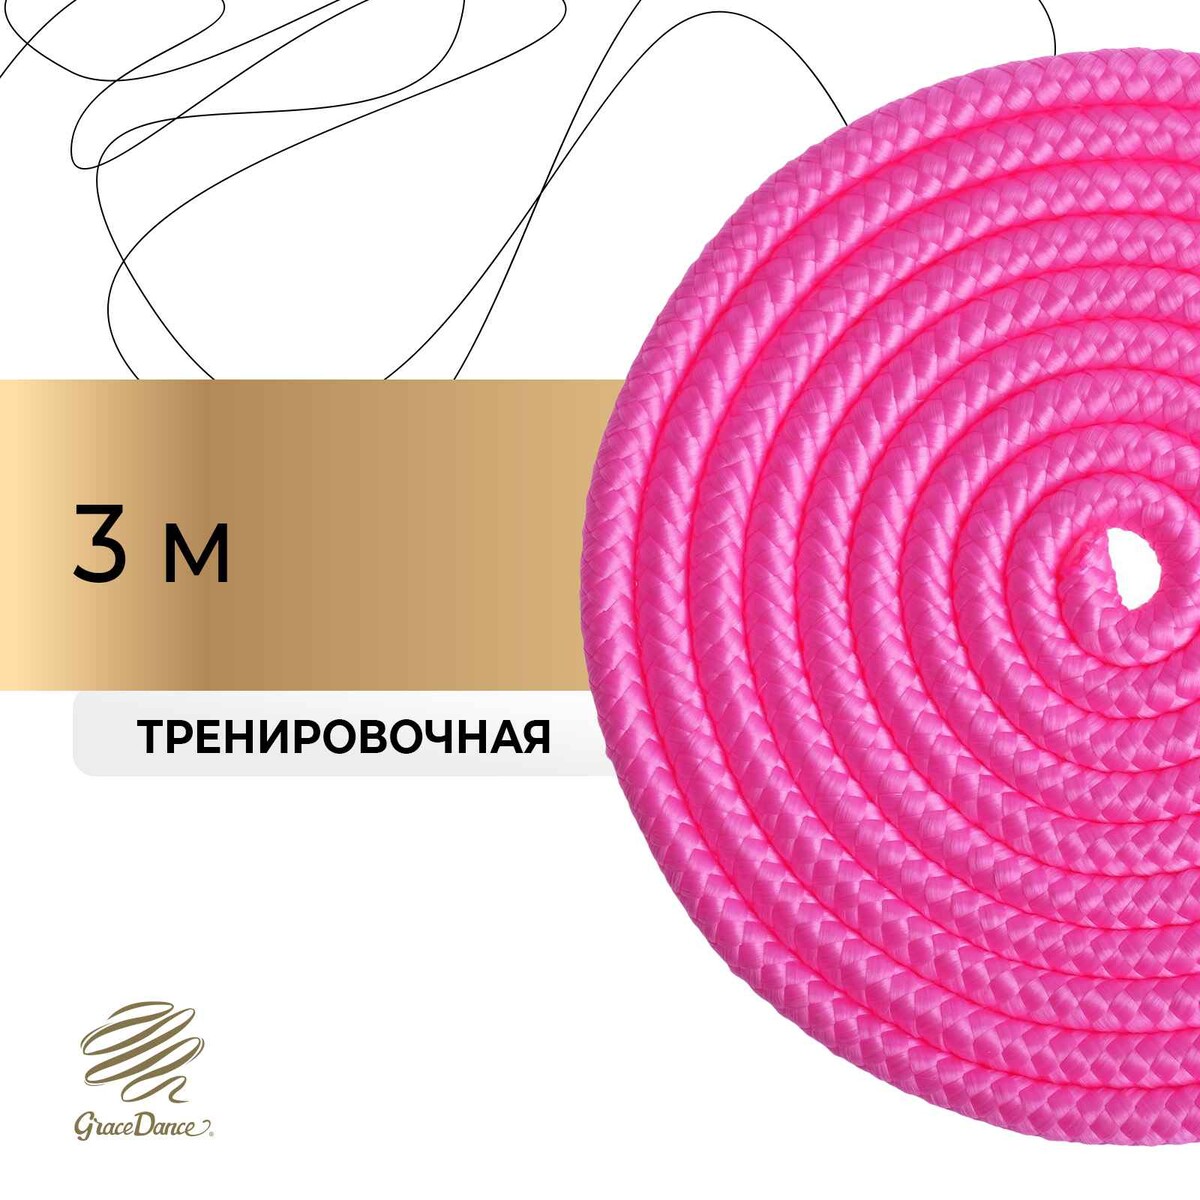 Скакалка для художественной гимнастики grace dance, 3 м, цвет розовый ковер для художественной гимнастики soft gymprof 7х7м